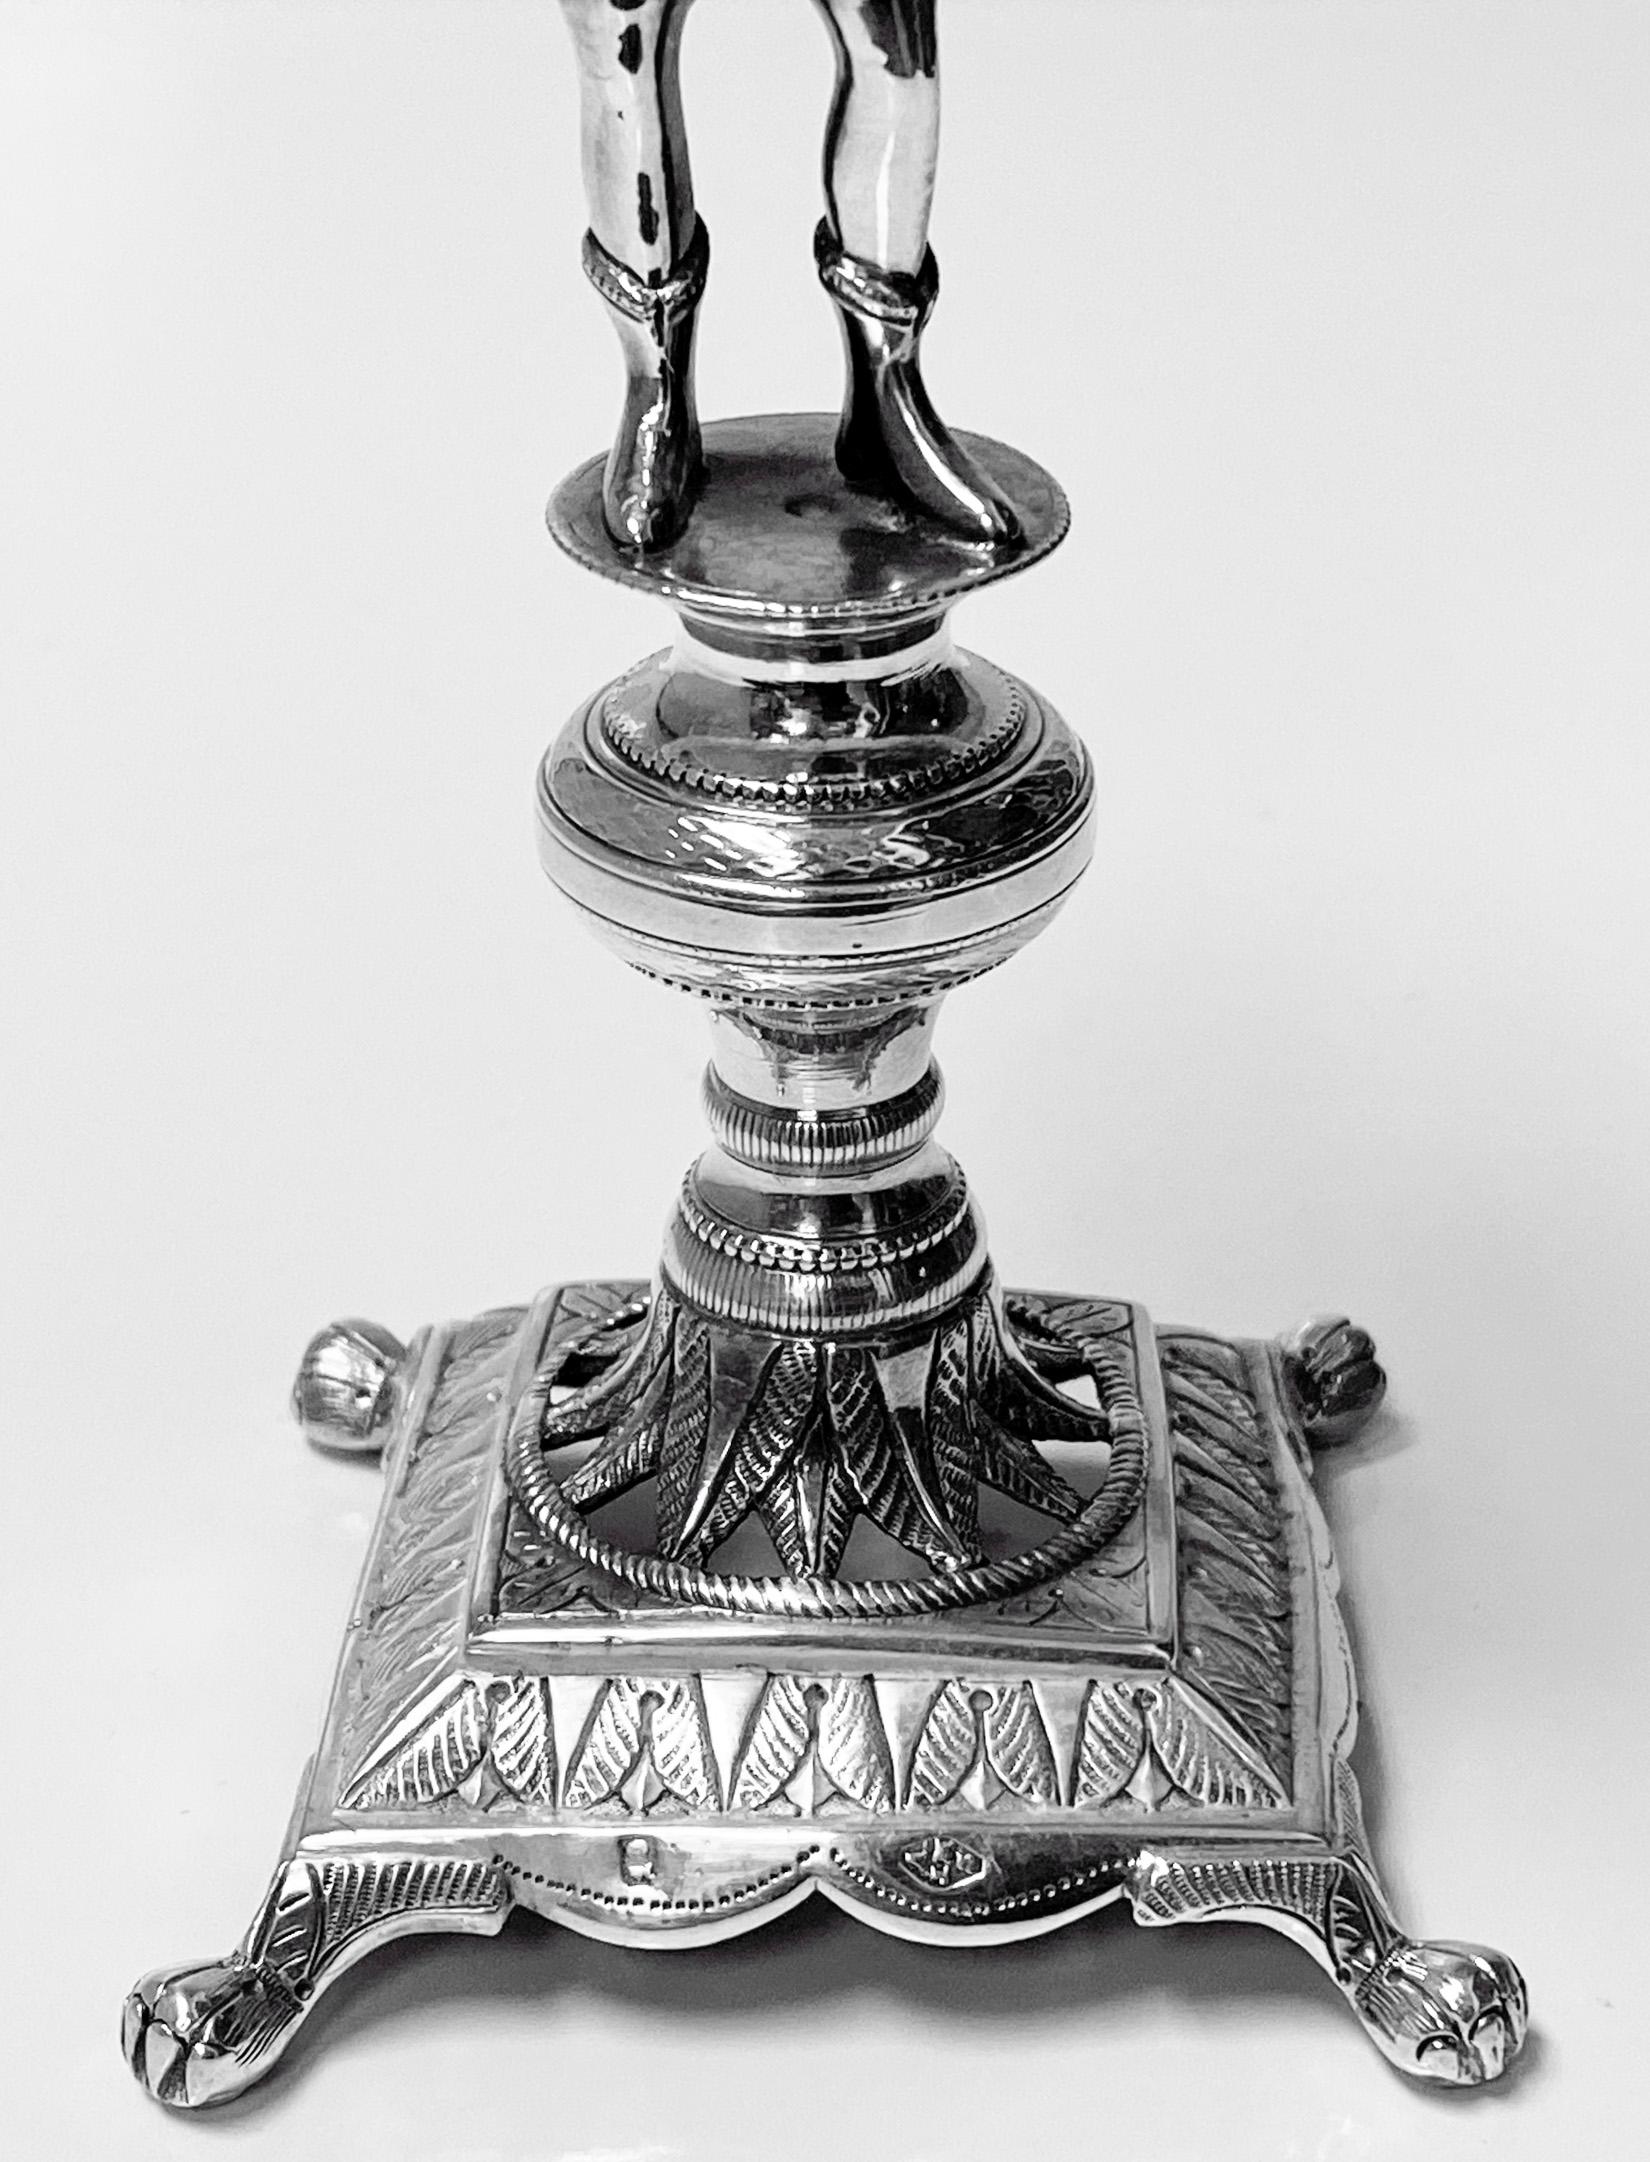 Brazilian Antique Silver Toothpick Holder, Rio de Janeiro, Brazil, circa 1850